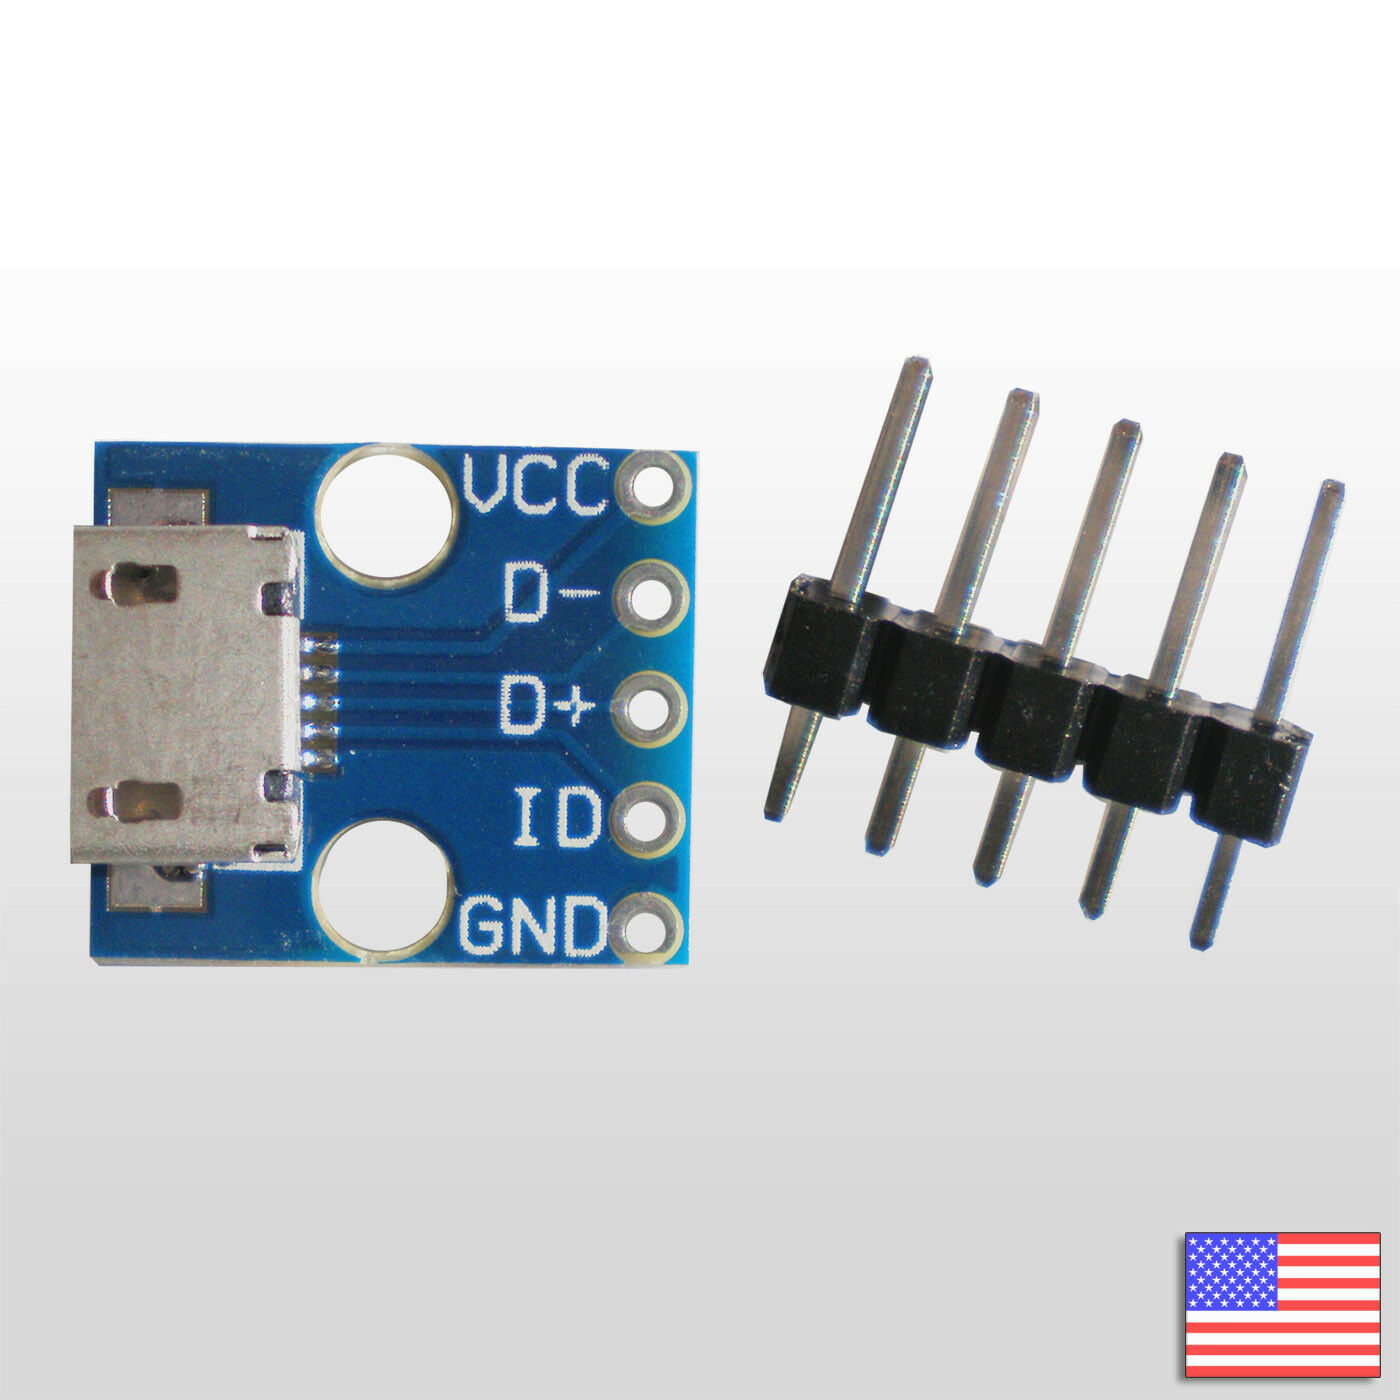 2pcs Micro Usb Breakout Board - Micro B Female Connector Pcb Module For Arduino